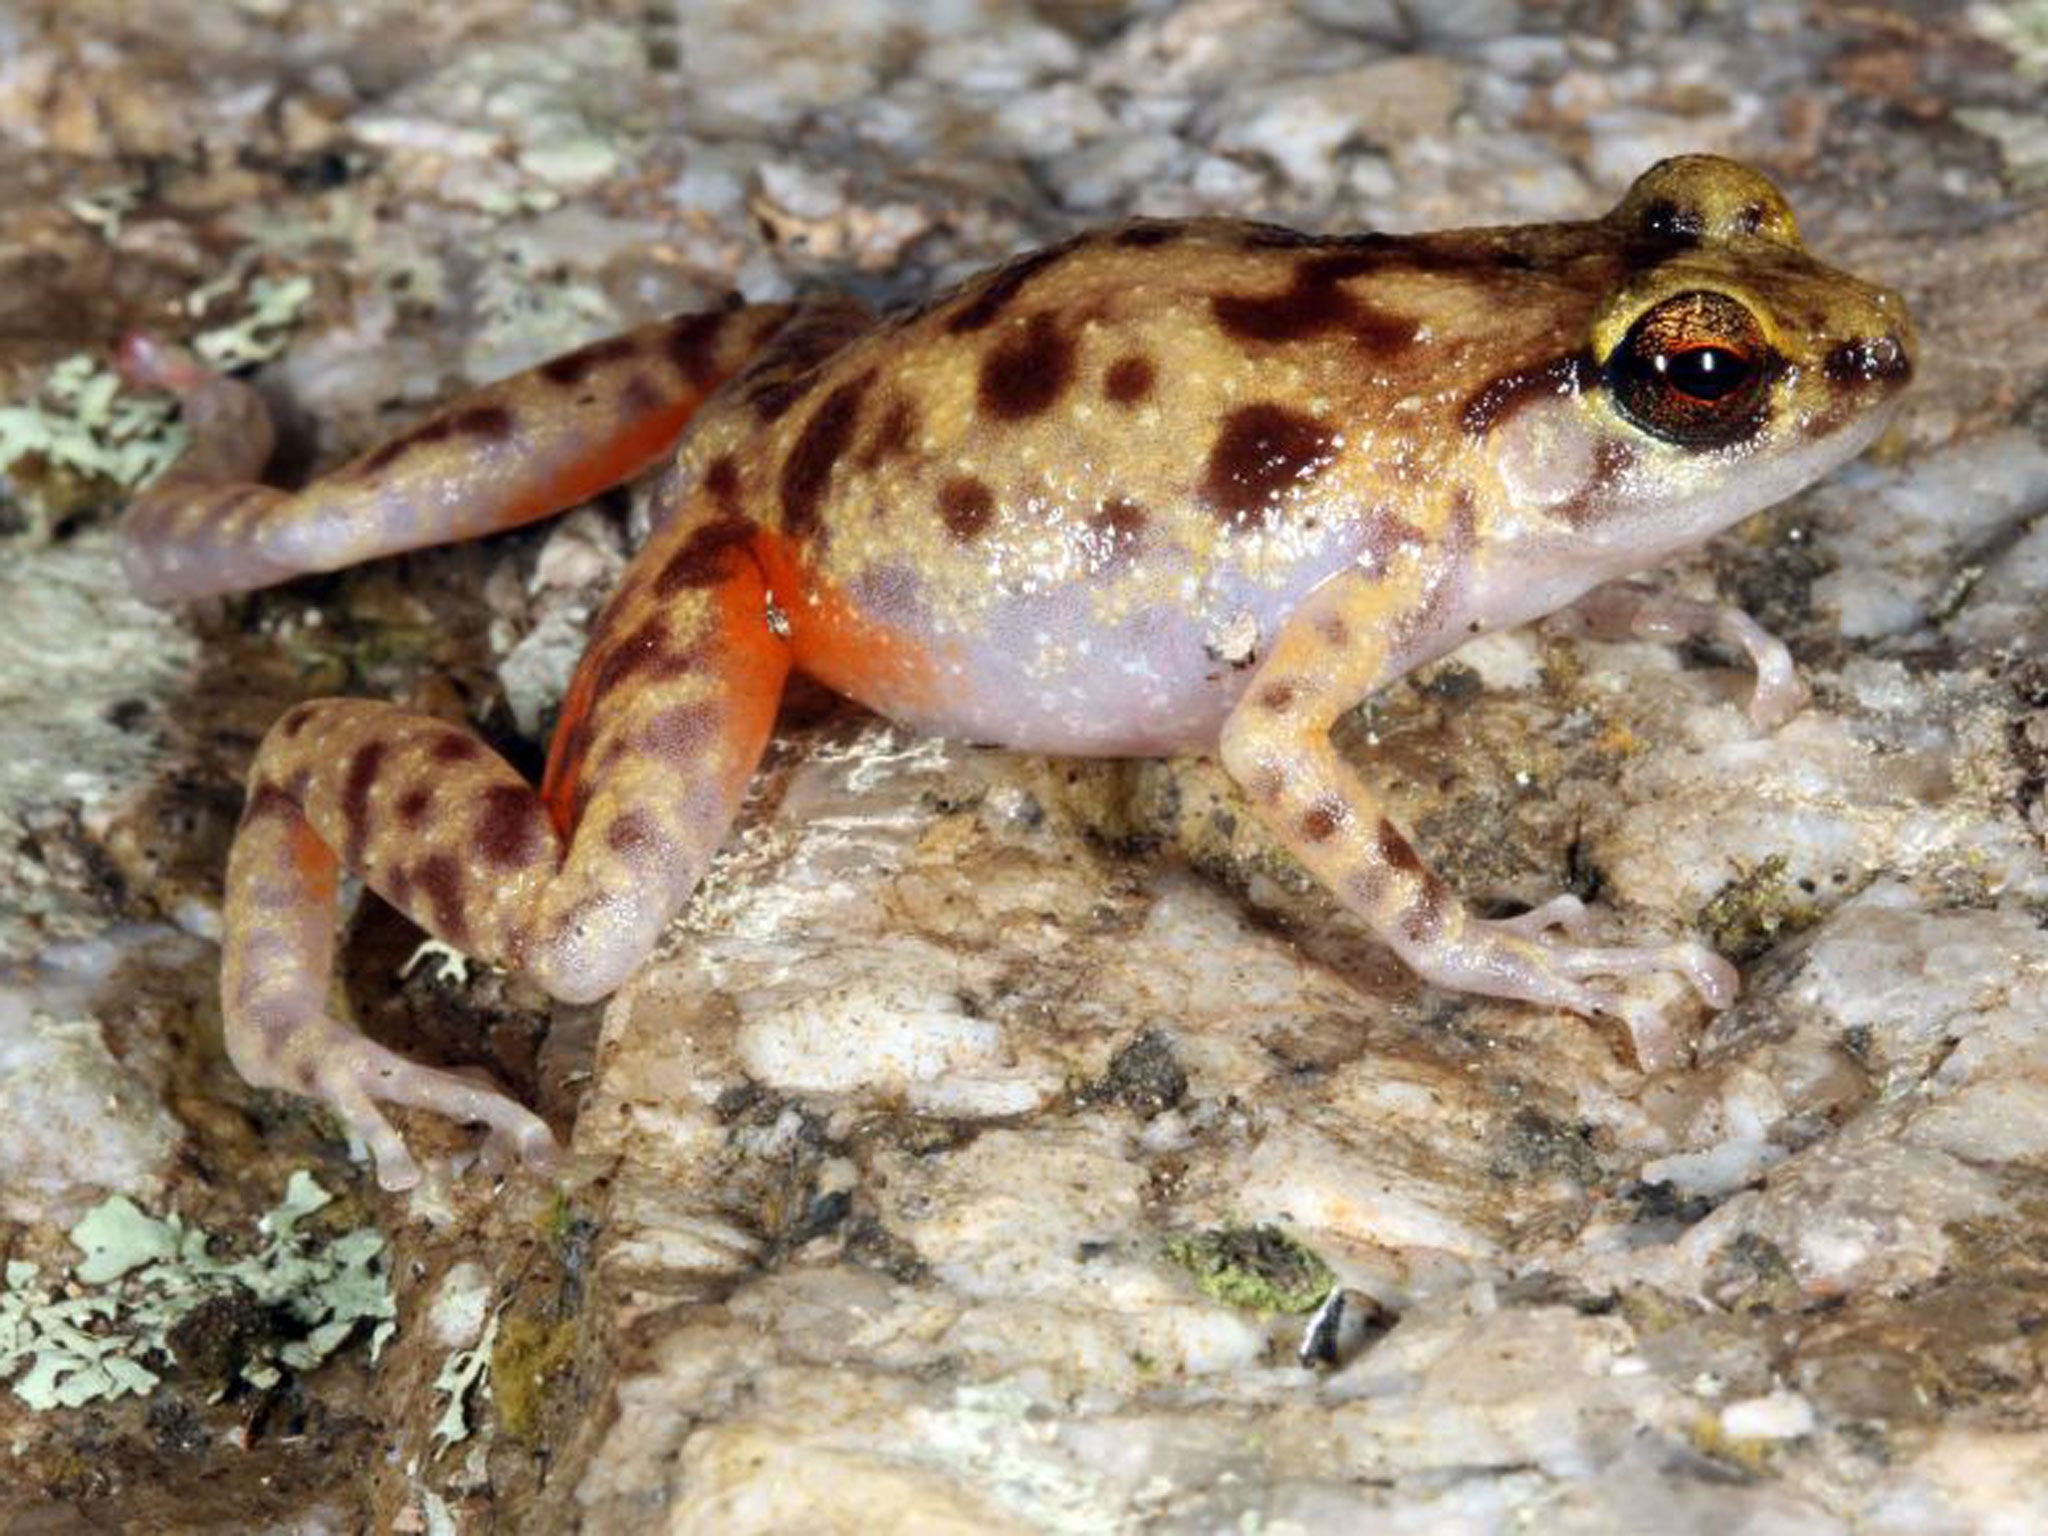 The boulder-dwelling frog